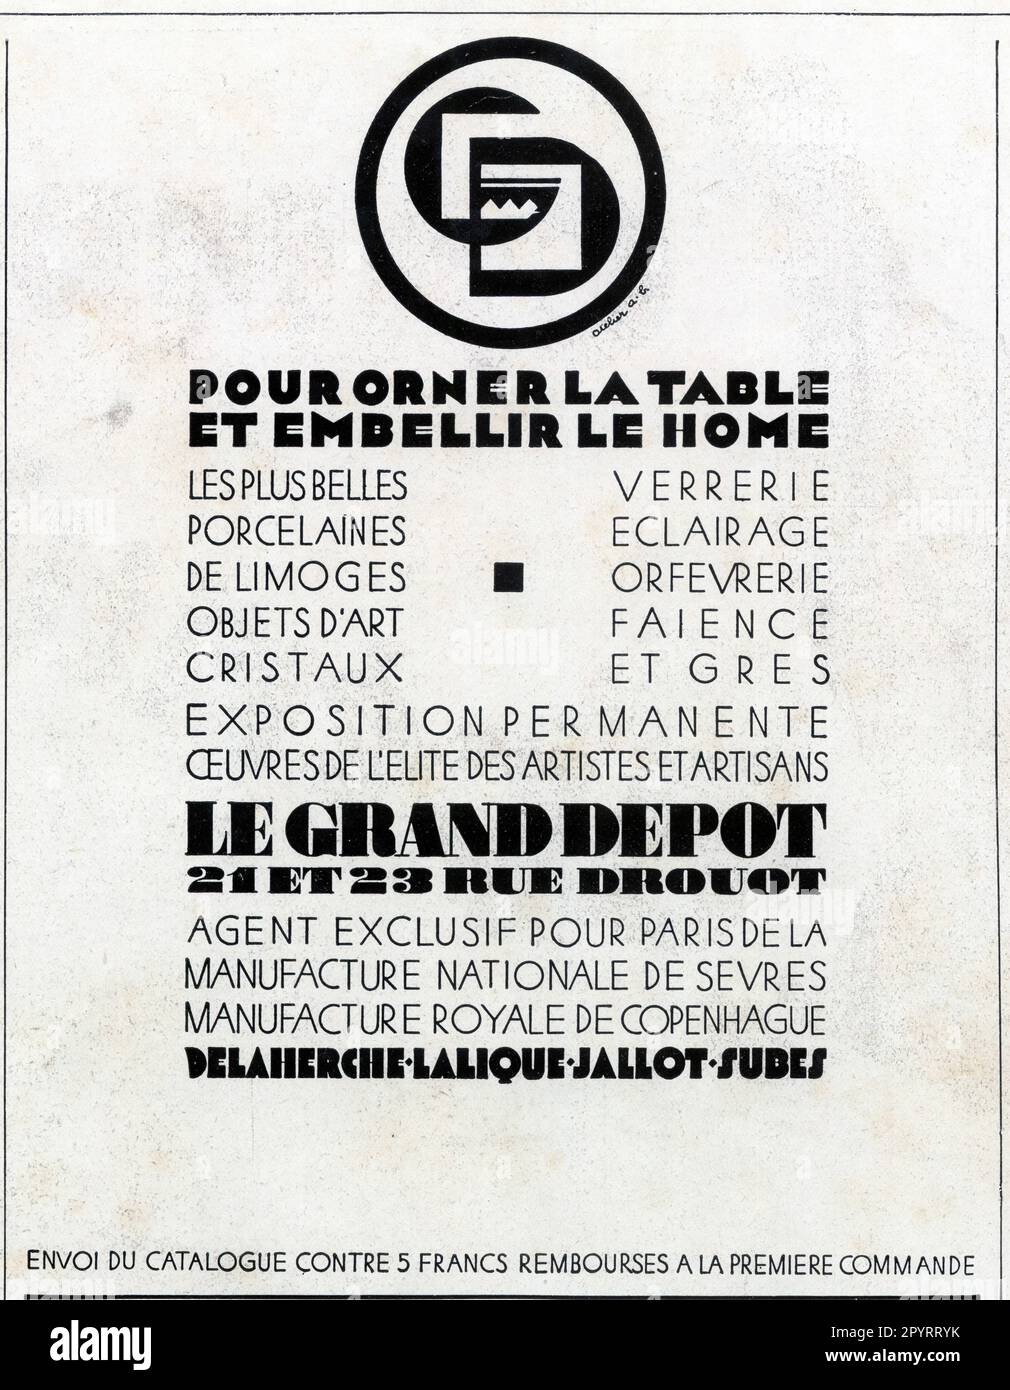 Publicité ancienne POUR ORNER LA TABLE ET EMBELLIR LE HOME. 1929 Stock Photo